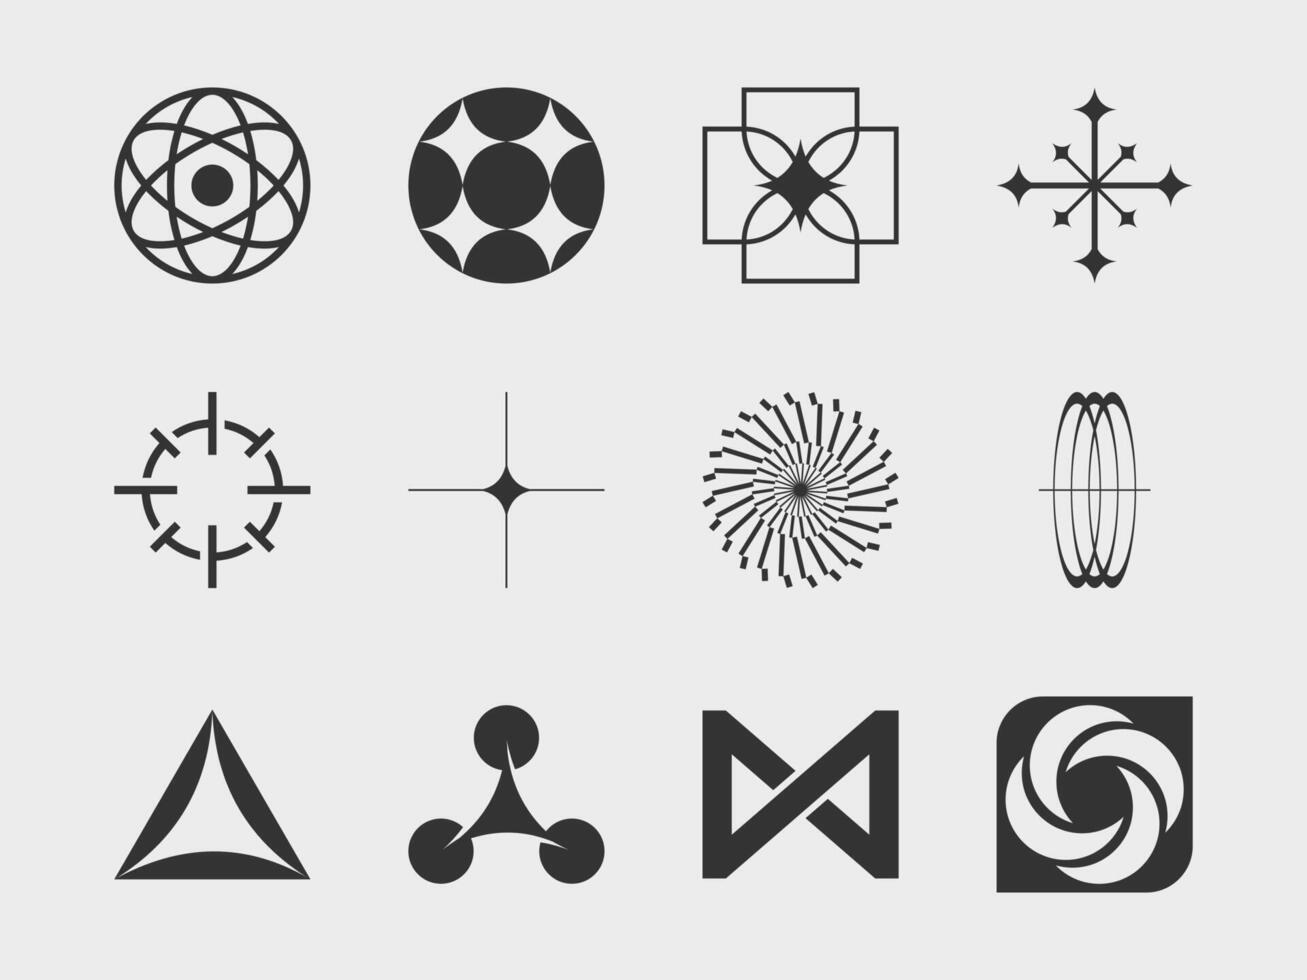 abstract verzameling 9 grafisch meetkundig symbolen en voorwerpen in y2k stijl. Sjablonen voor notities, affiches, spandoeken, stickers, bedrijf kaarten, logo. vector